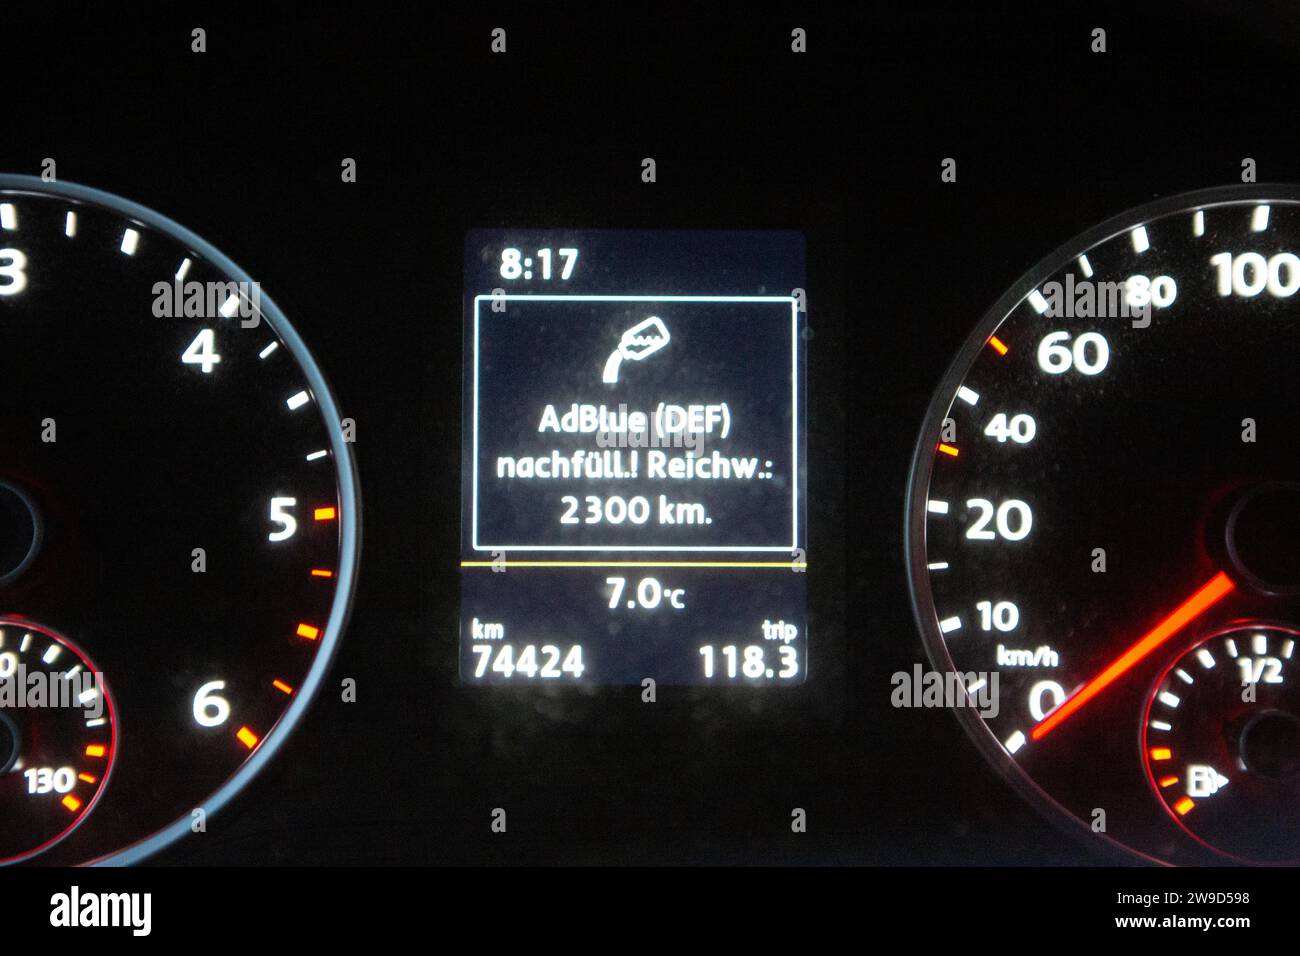 AdBlue nachfüllen! Anzeige im Volkswagen Tiguan, wenn die Flüssigkeit für den Diesel nachgefüllt werden muss. Stock Photo